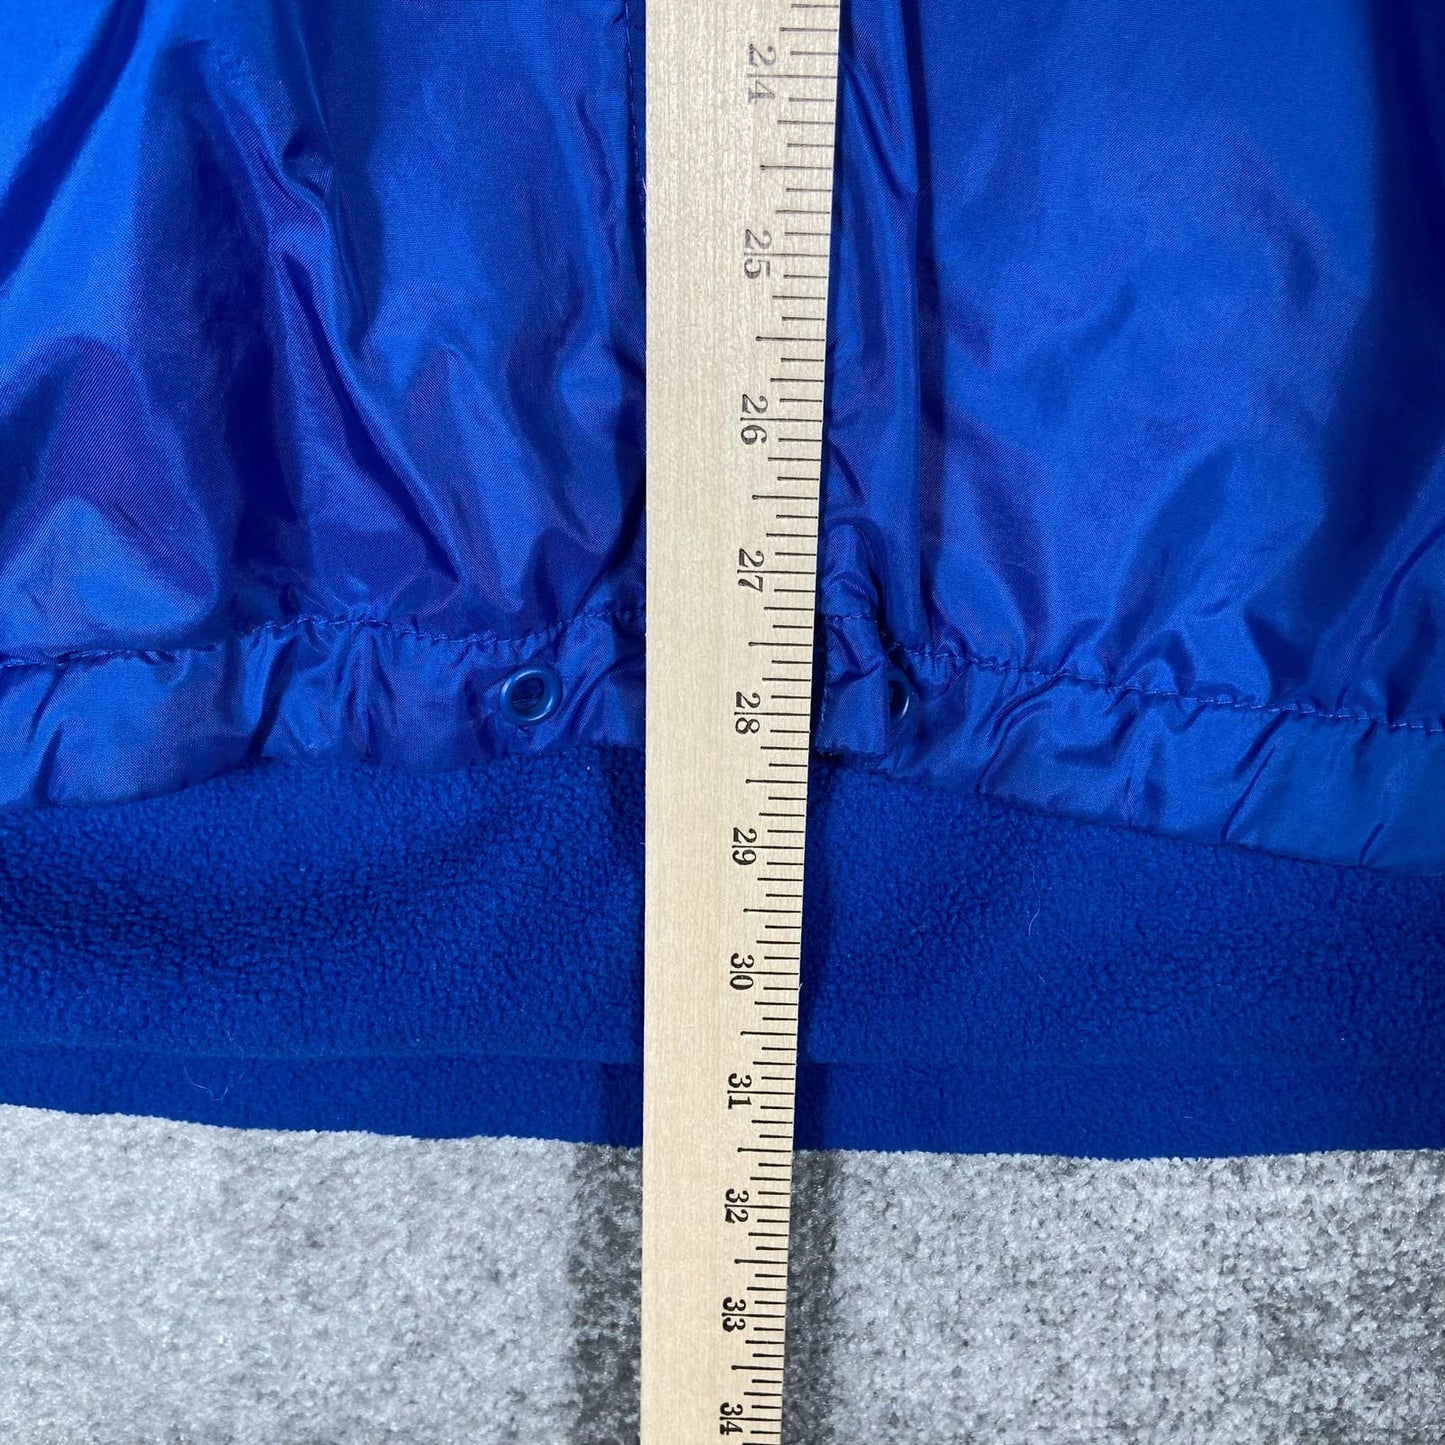 (XL) Vintage Nike Fleece Lined Windbreaker Rain Coat Jacket